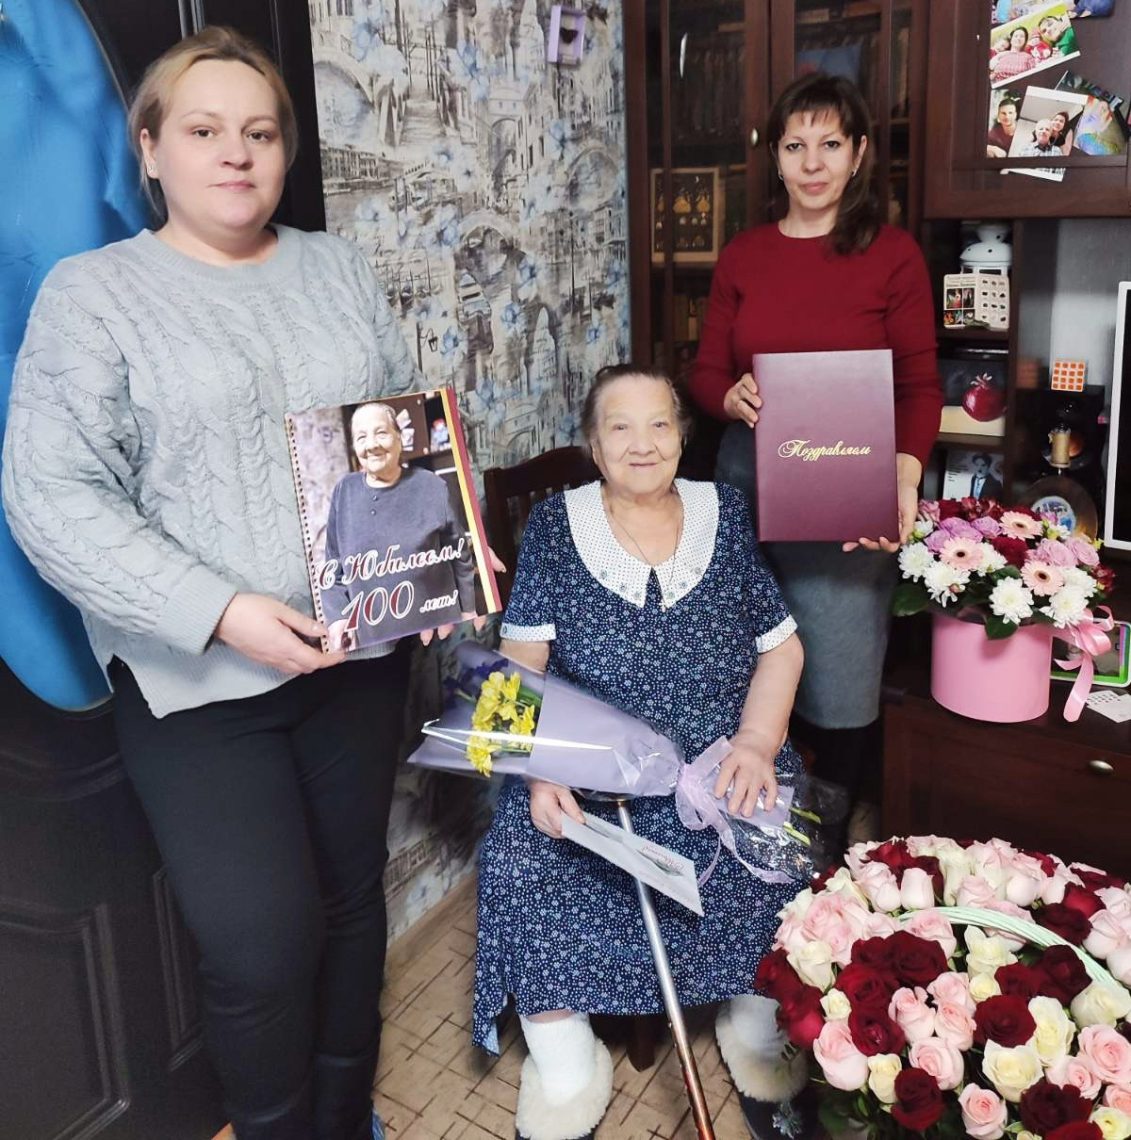 Солидная дата - 100 лет! Жительница Магнитогорска в юбилей получила поздравление от президента